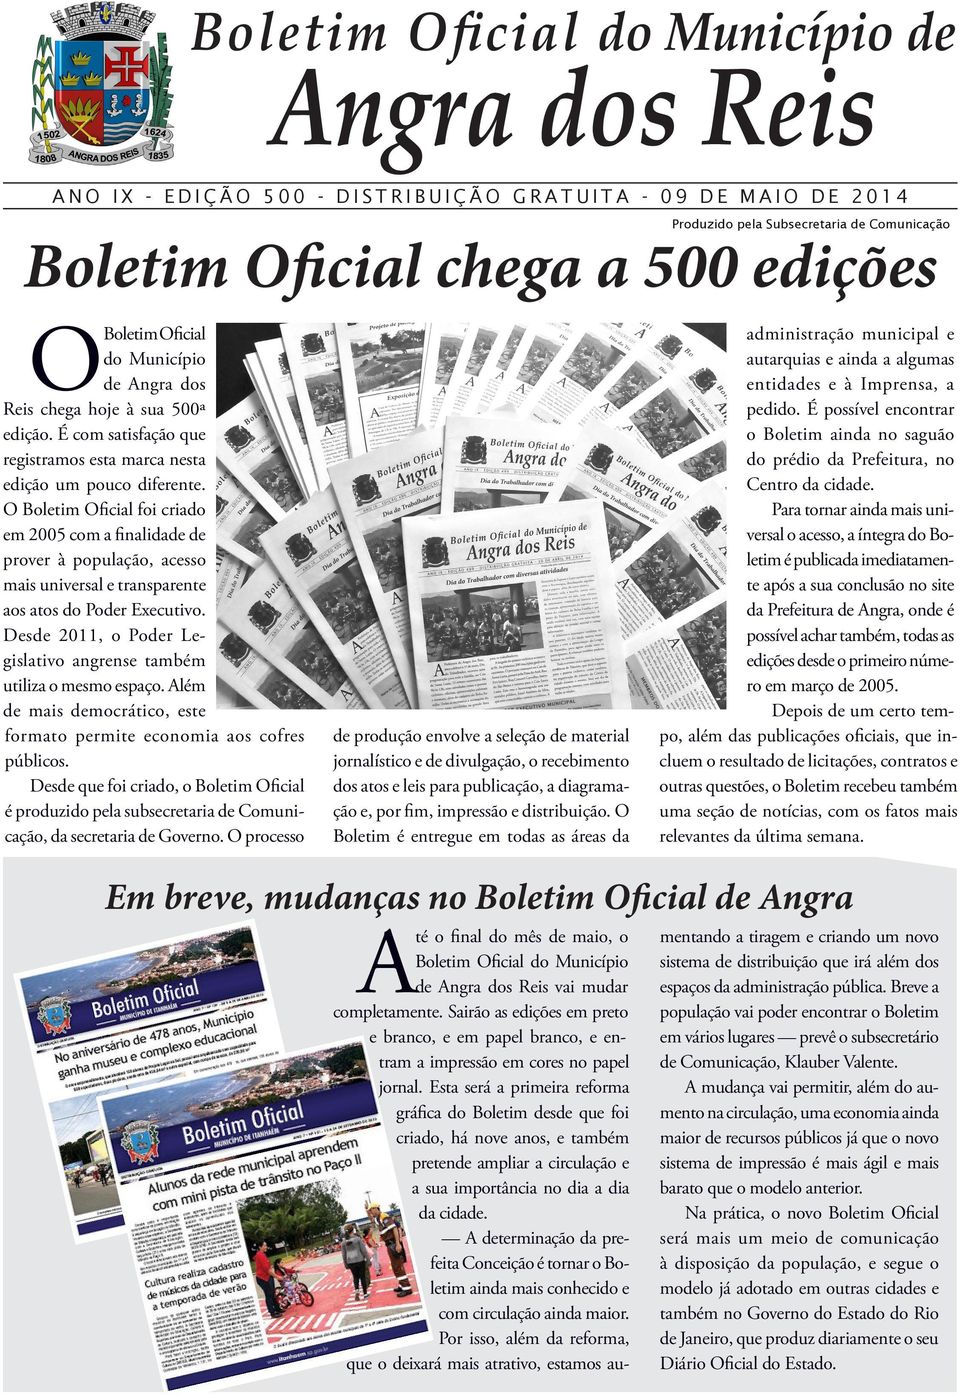 O Boletim Oficial foi criado em 2005 com a finalidade de prover à população, acesso mais universal e transparente aos atos do Poder Executivo.